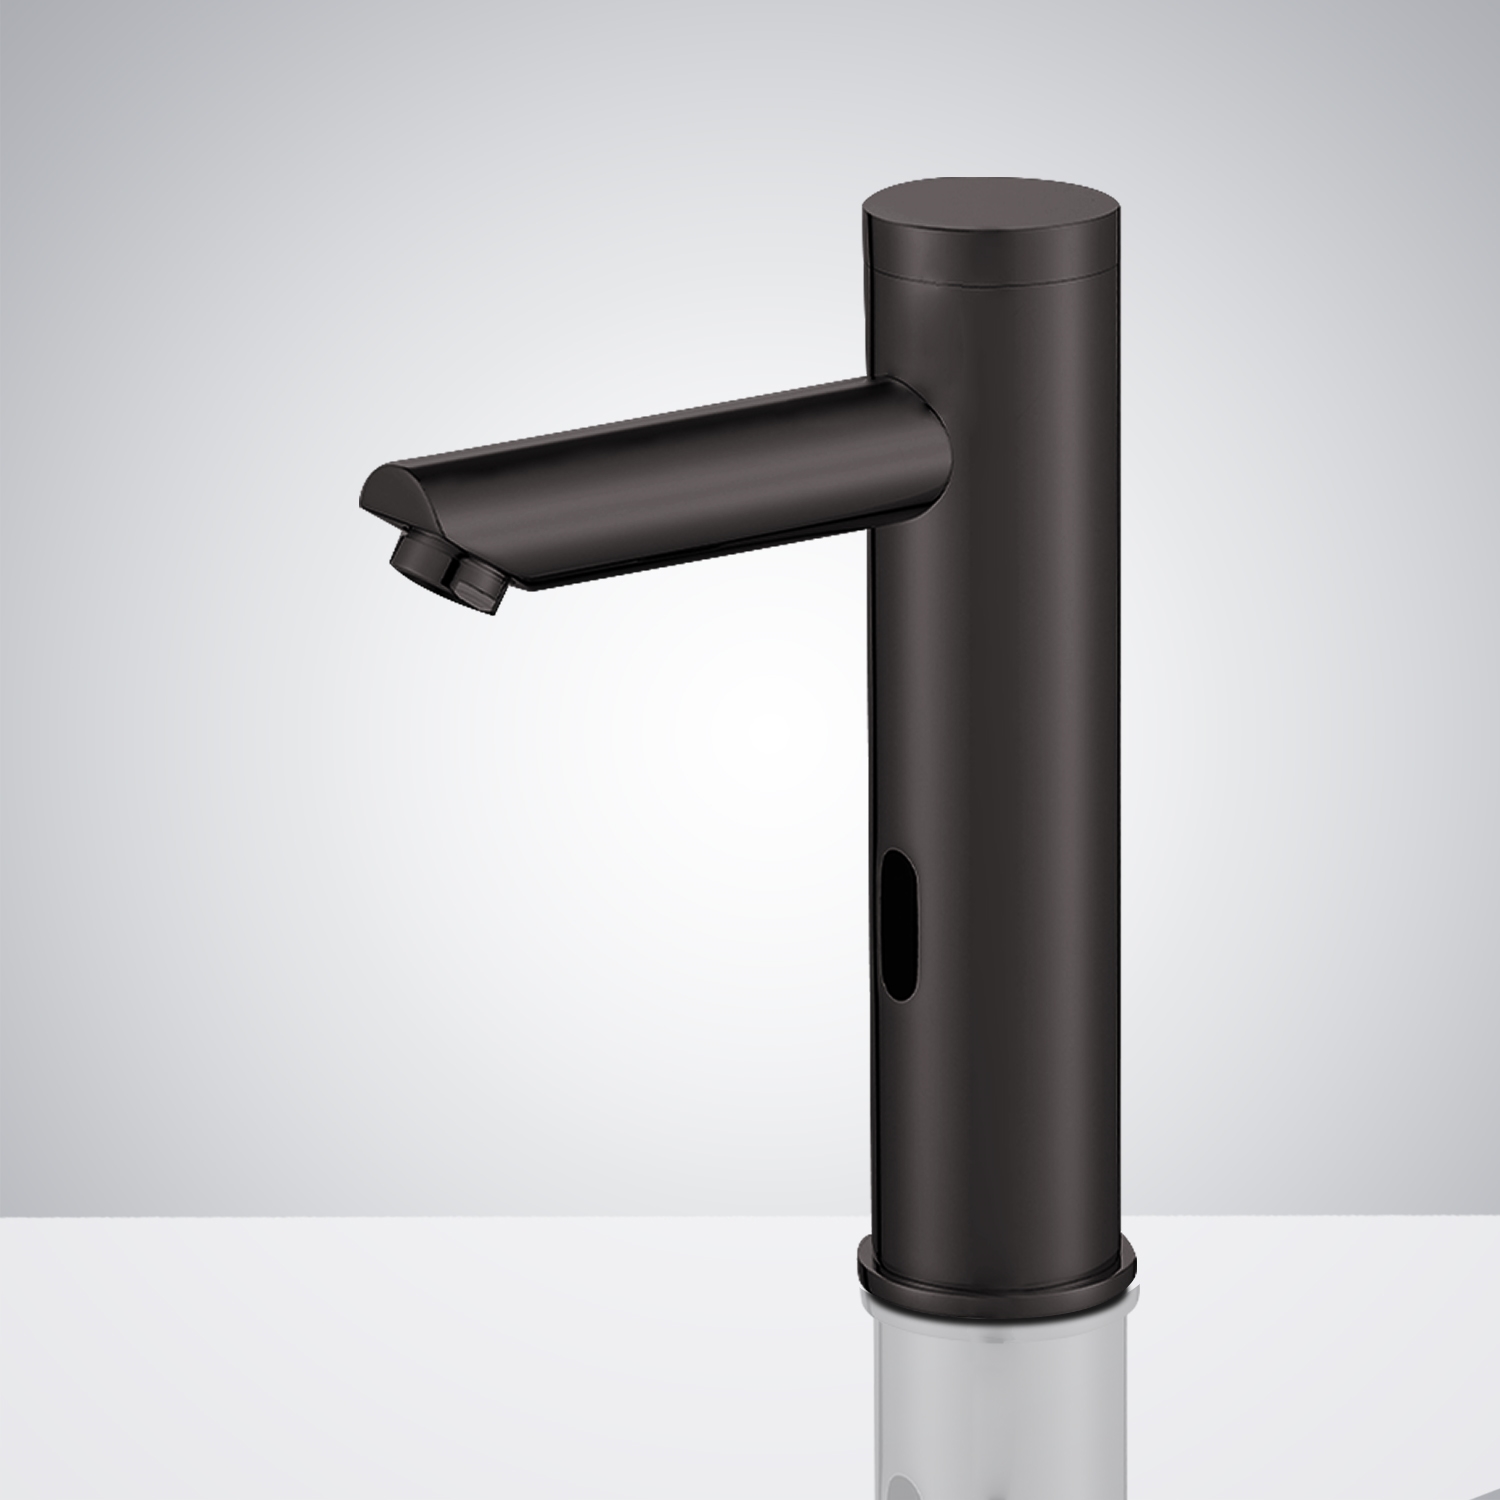 Fontana Commercial Matte Black Finish Touchless Automatic Sensor Faucet